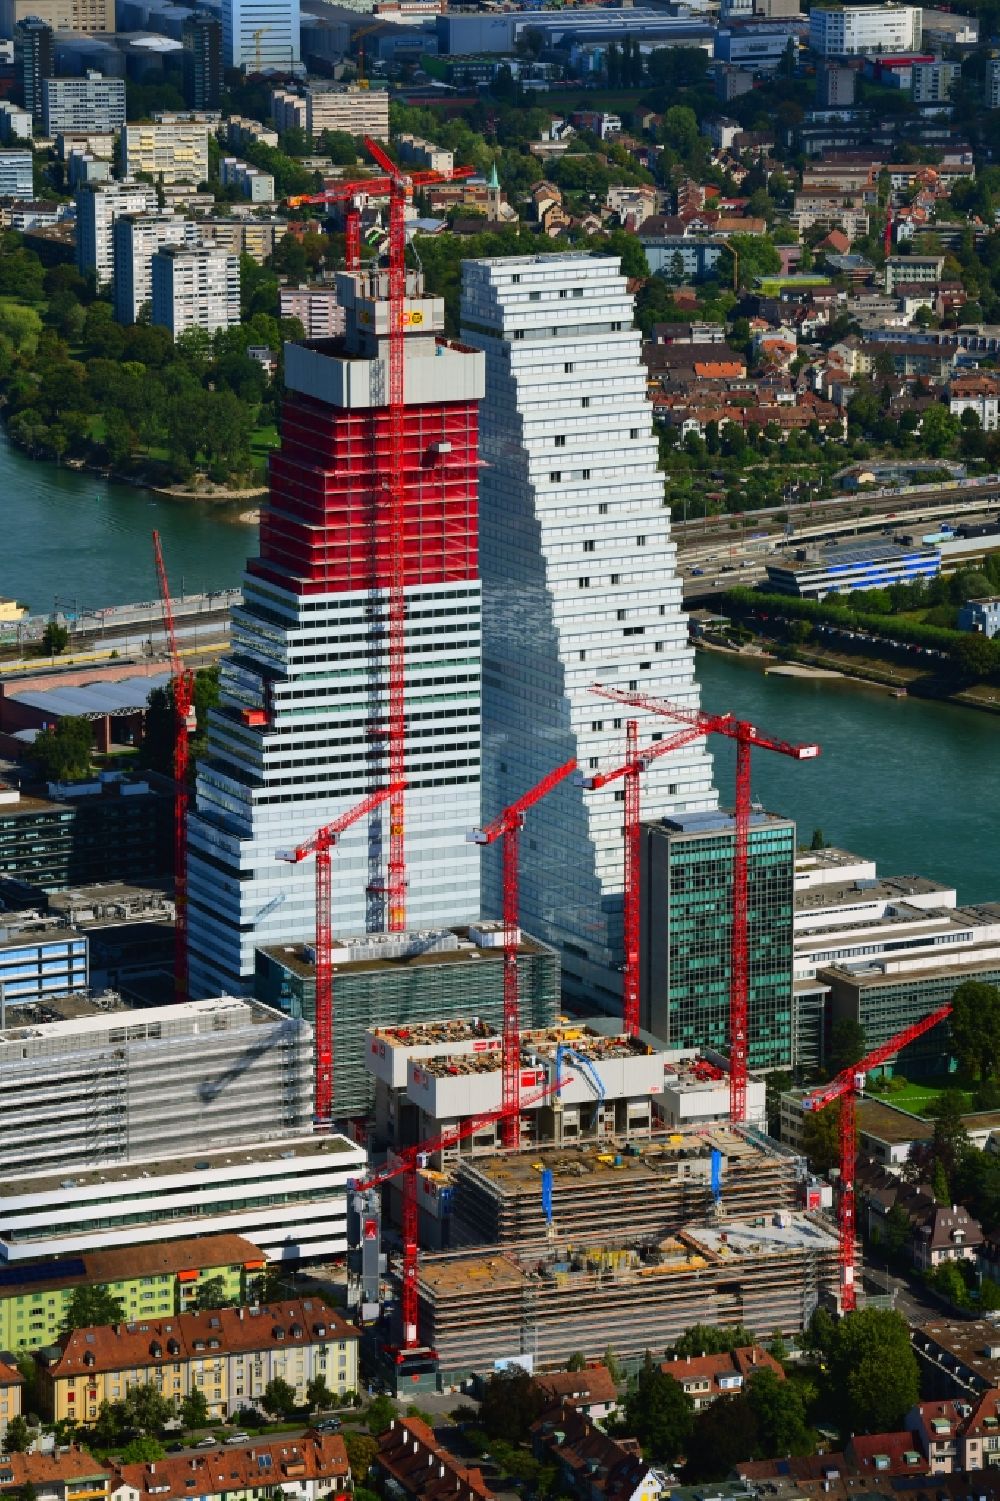 Basel von oben - Erweiterungs- Baustellen und Baukräne am Areal und Betriebsgelände der Pharmafirma Roche mit dem Roche- Turm - Hochhaus in Basel in der Schweiz